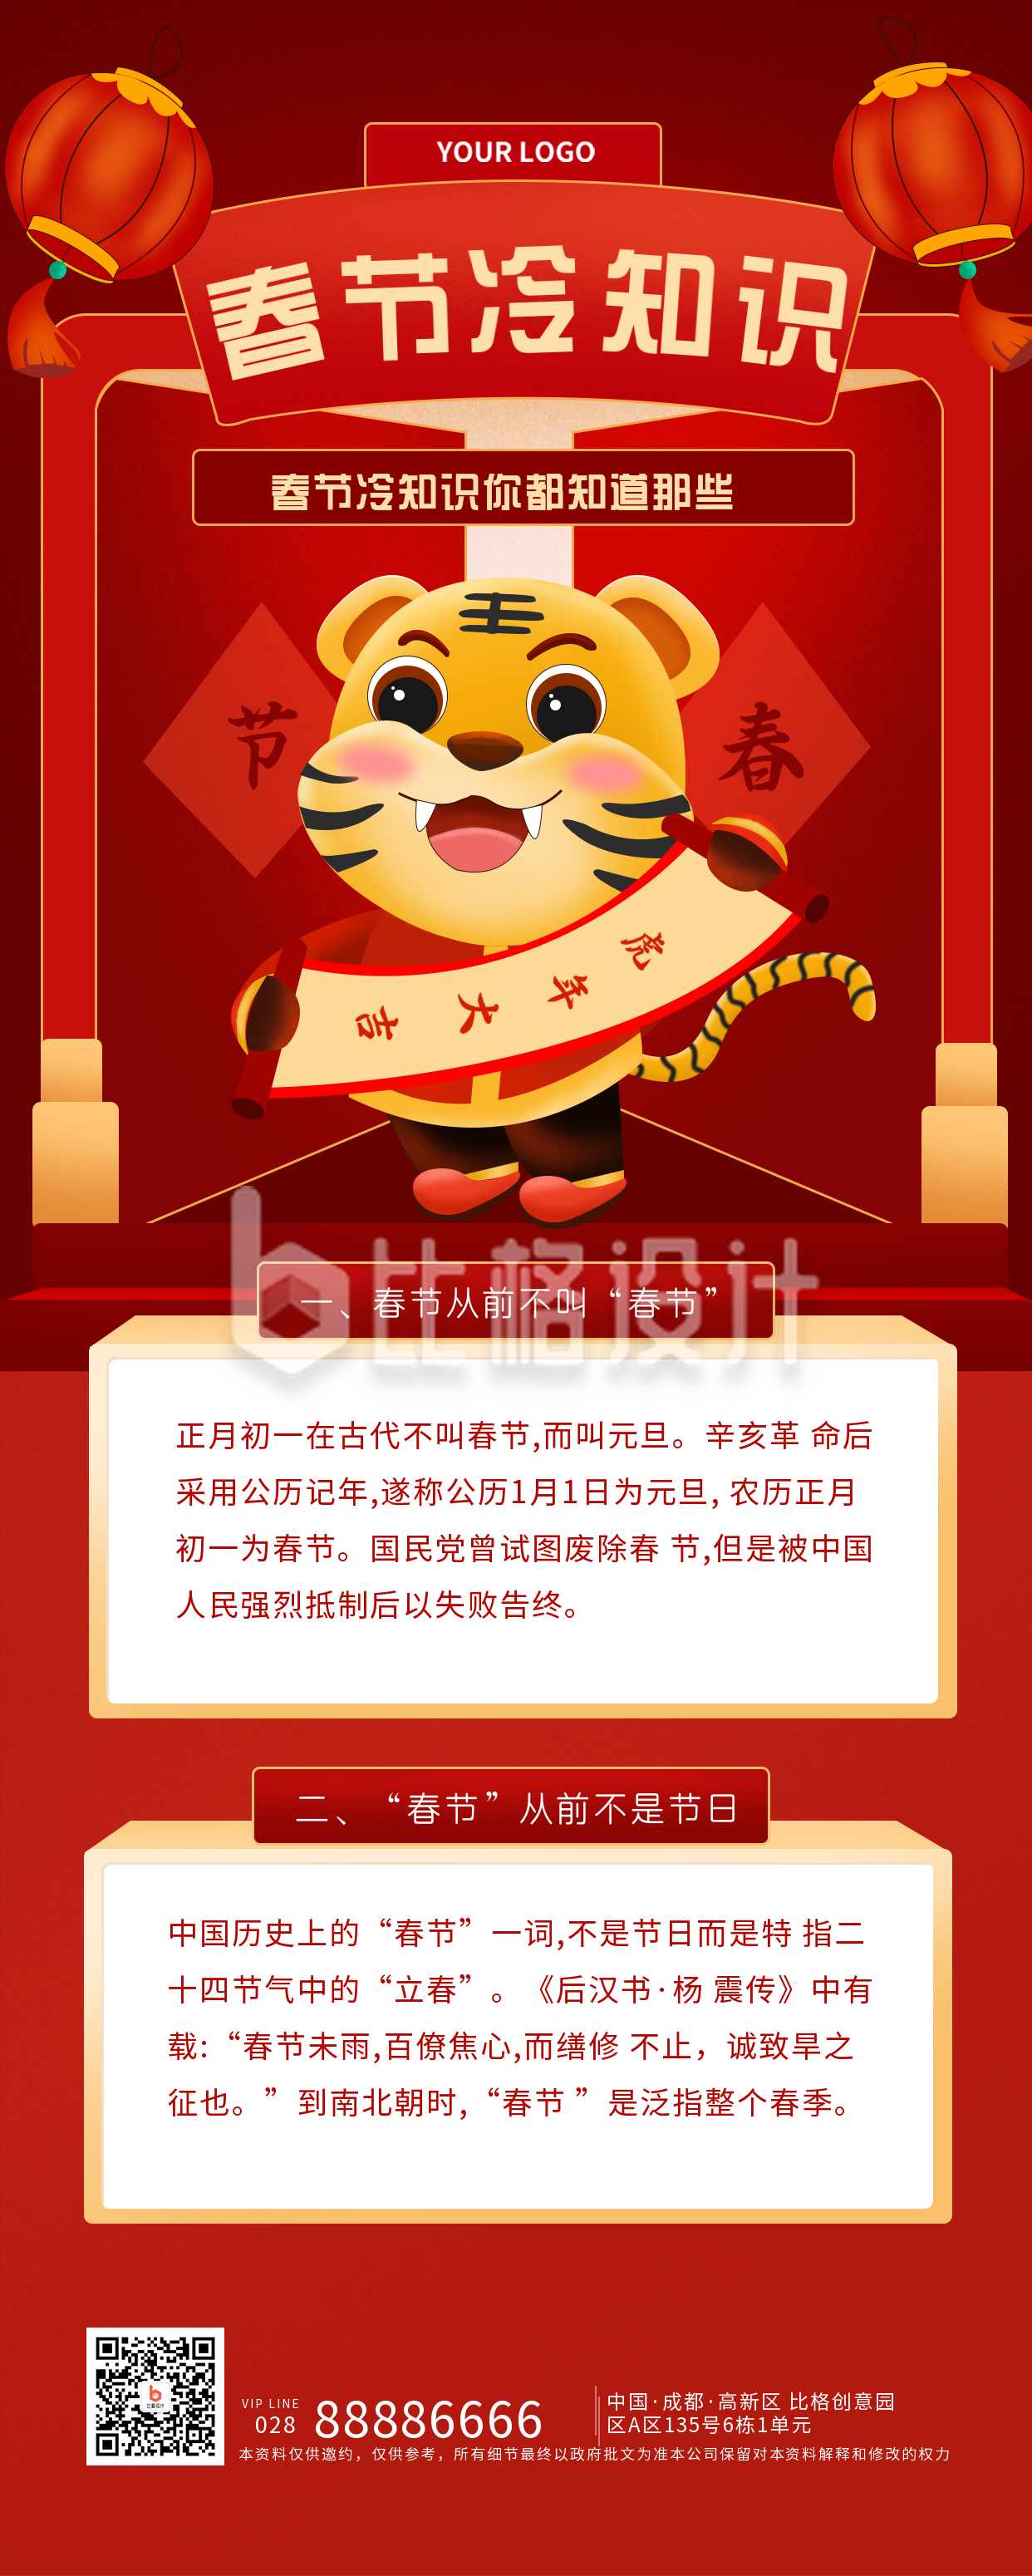 春节知识科普习俗指南宣传手机长图海报